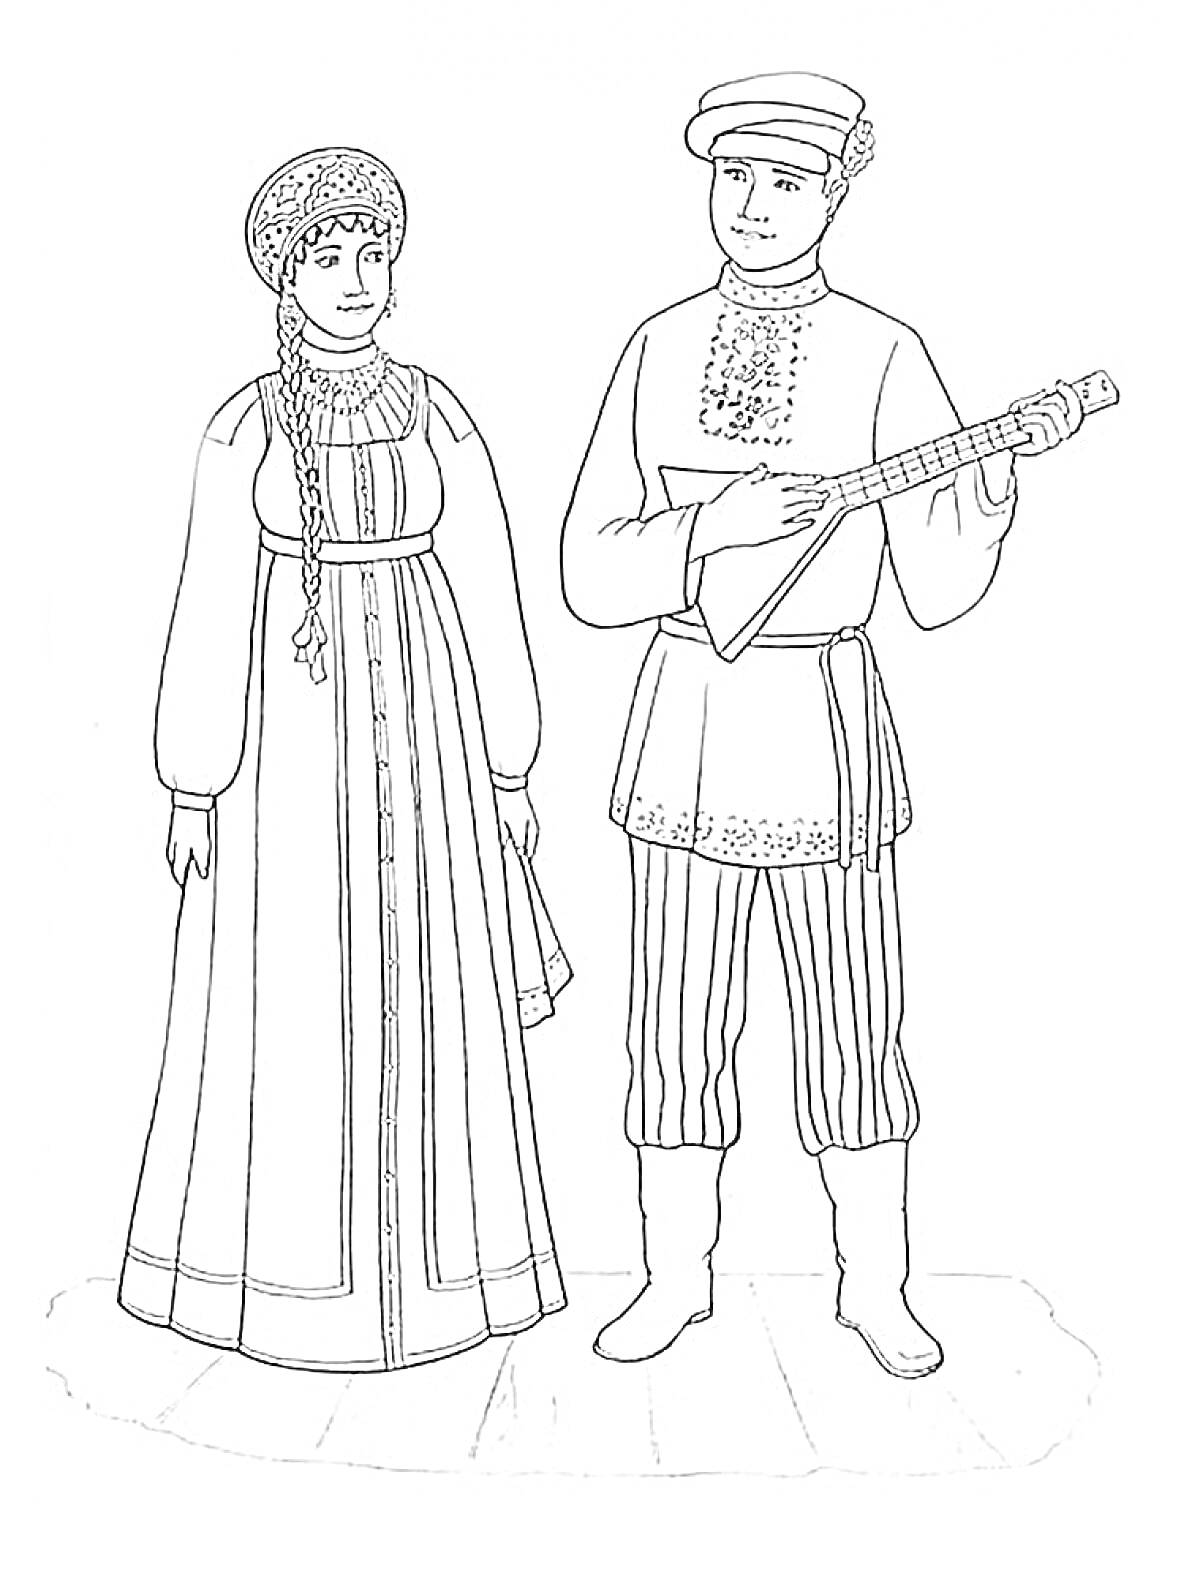 Раскраска Русский народный костюм - мужчина и женщина в традиционной одежде: у женщины длинное платье с орнаментом и кокошник, у мужчины рубаха с поясом, штаны с орнаментом, сапоги и кепка, он держит балалайку.